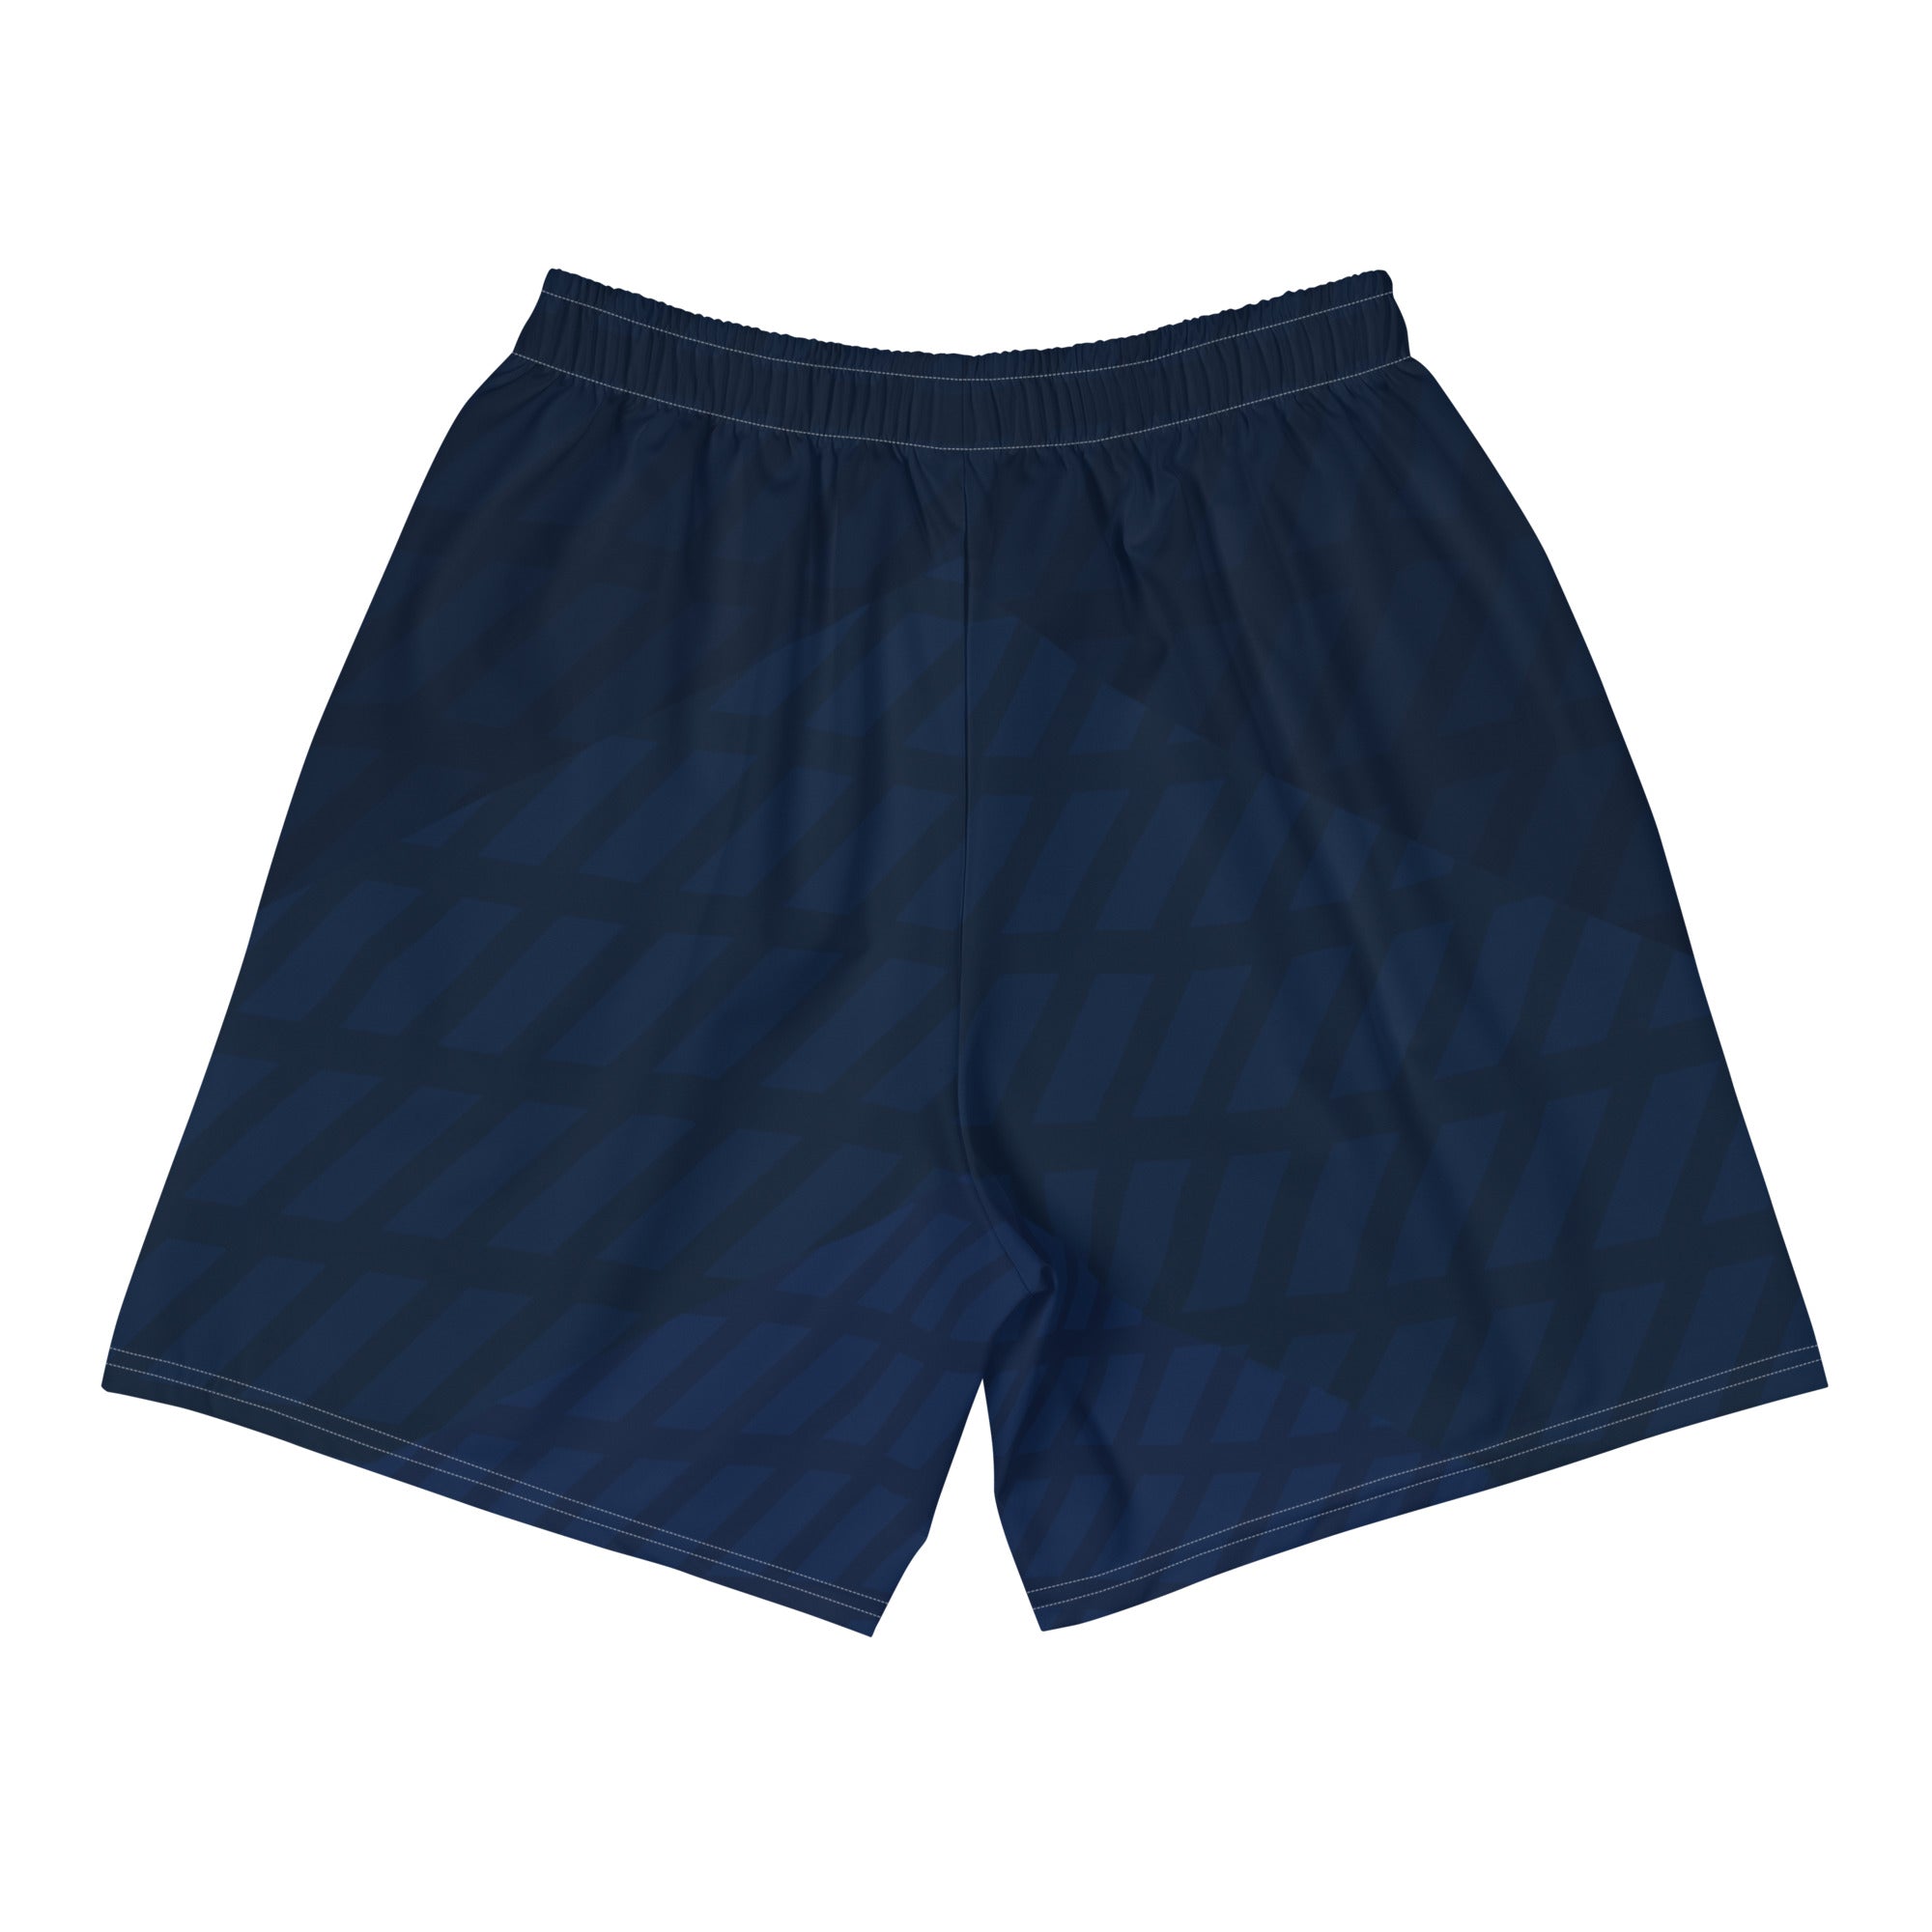 Highland Men's Athletic Shorts